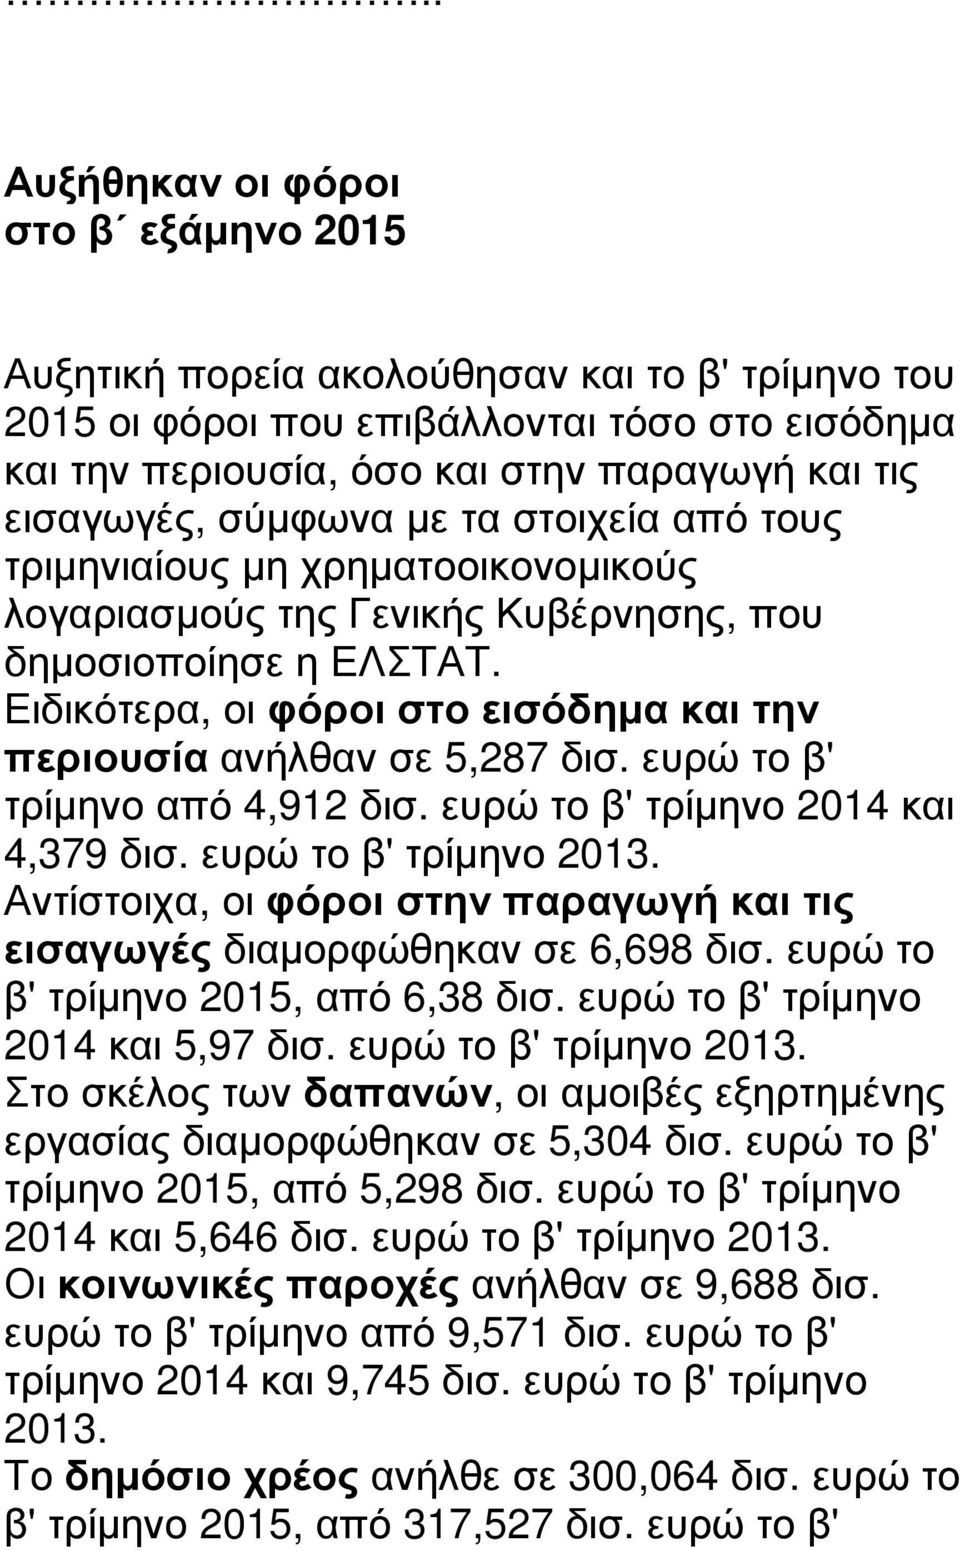 Ειδικότερα, οι φόροι στο εισόδηµα και την περιουσία ανήλθαν σε 5,287 δισ. ευρώ το β' τρίµηνο από 4,912 δισ. ευρώ το β' τρίµηνο 2014 και 4,379 δισ. ευρώ το β' τρίµηνο 2013.